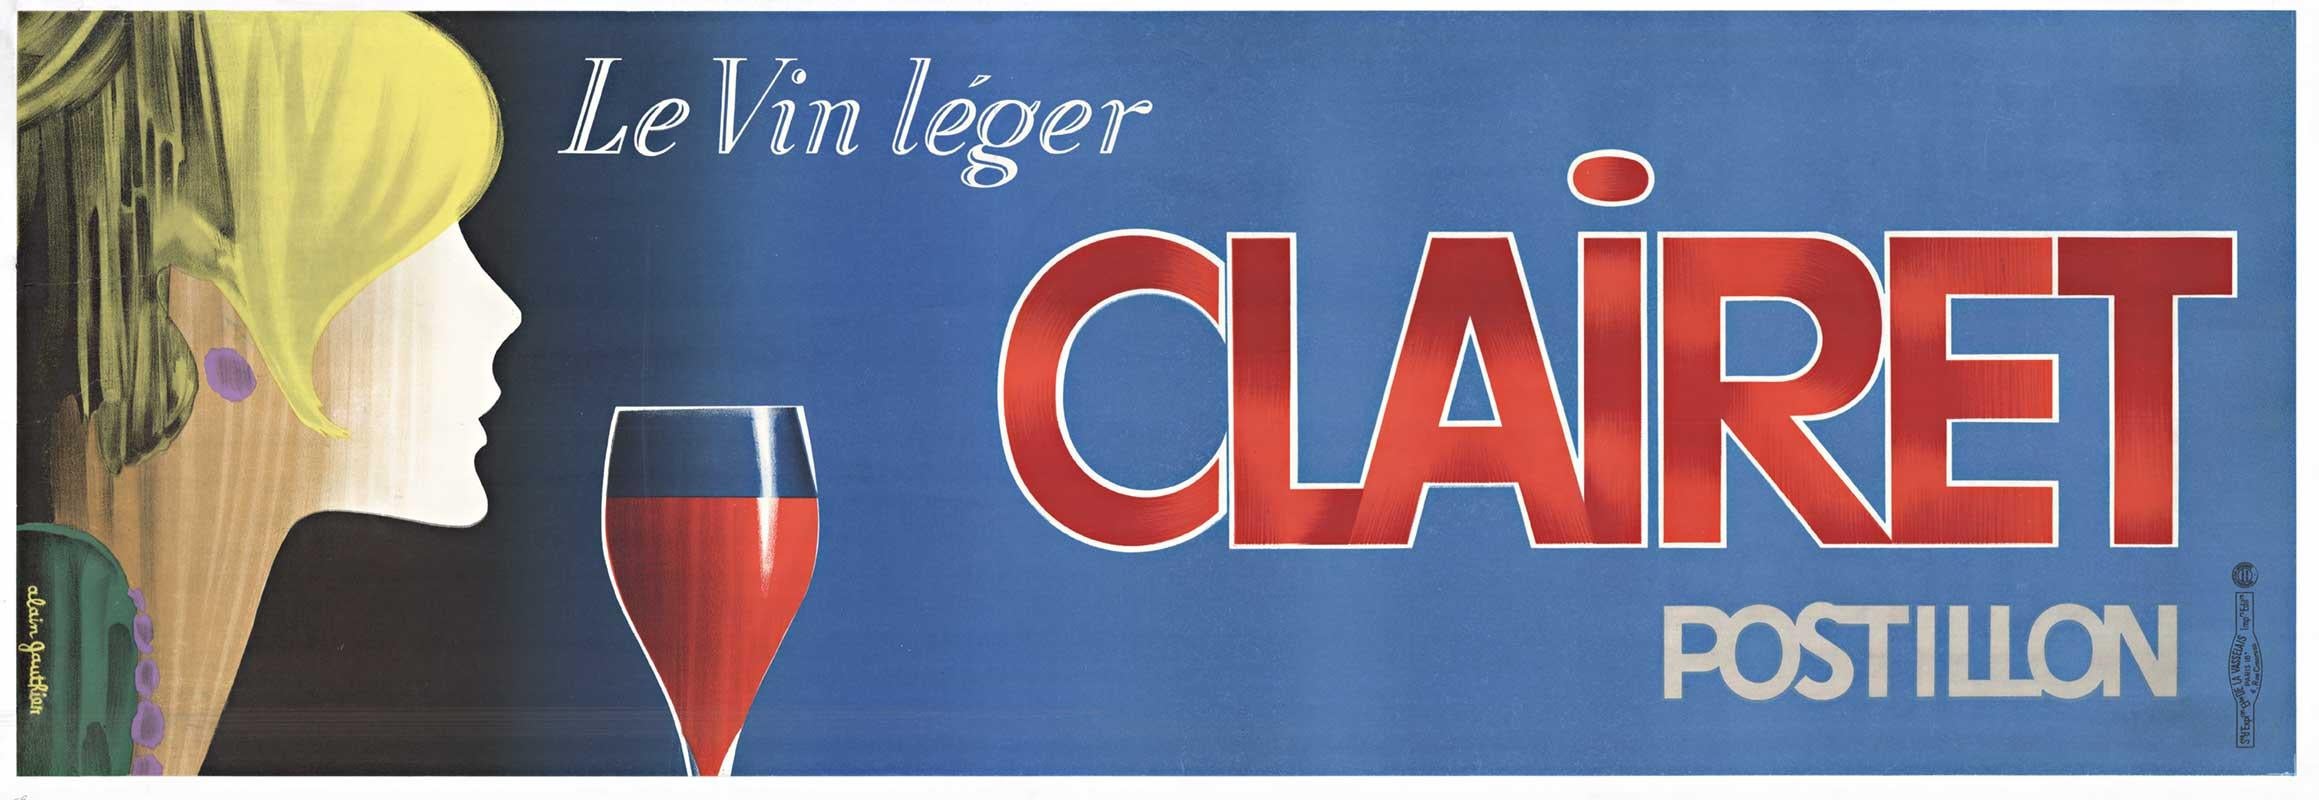 Alain Gauthier Portrait Print - Original Clairet Postillon Le Vin Leger vintage French wine horizontal poster